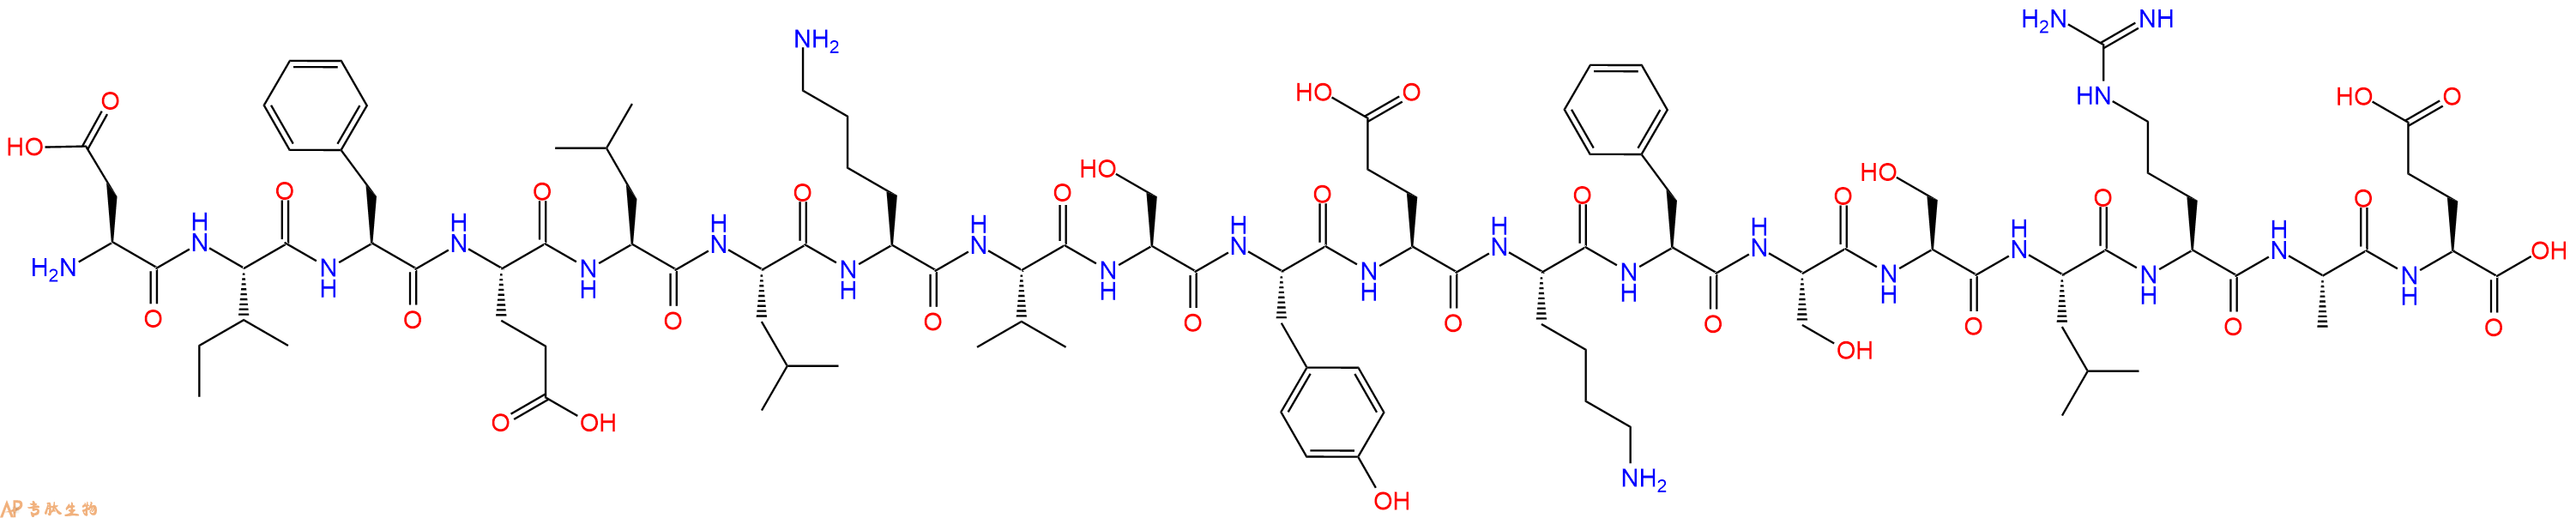 专肽生物产品H2N-Asp-Ile-Phe-Glu-Leu-Leu-Lys-Val-Ser-Tyr-Glu-Ly